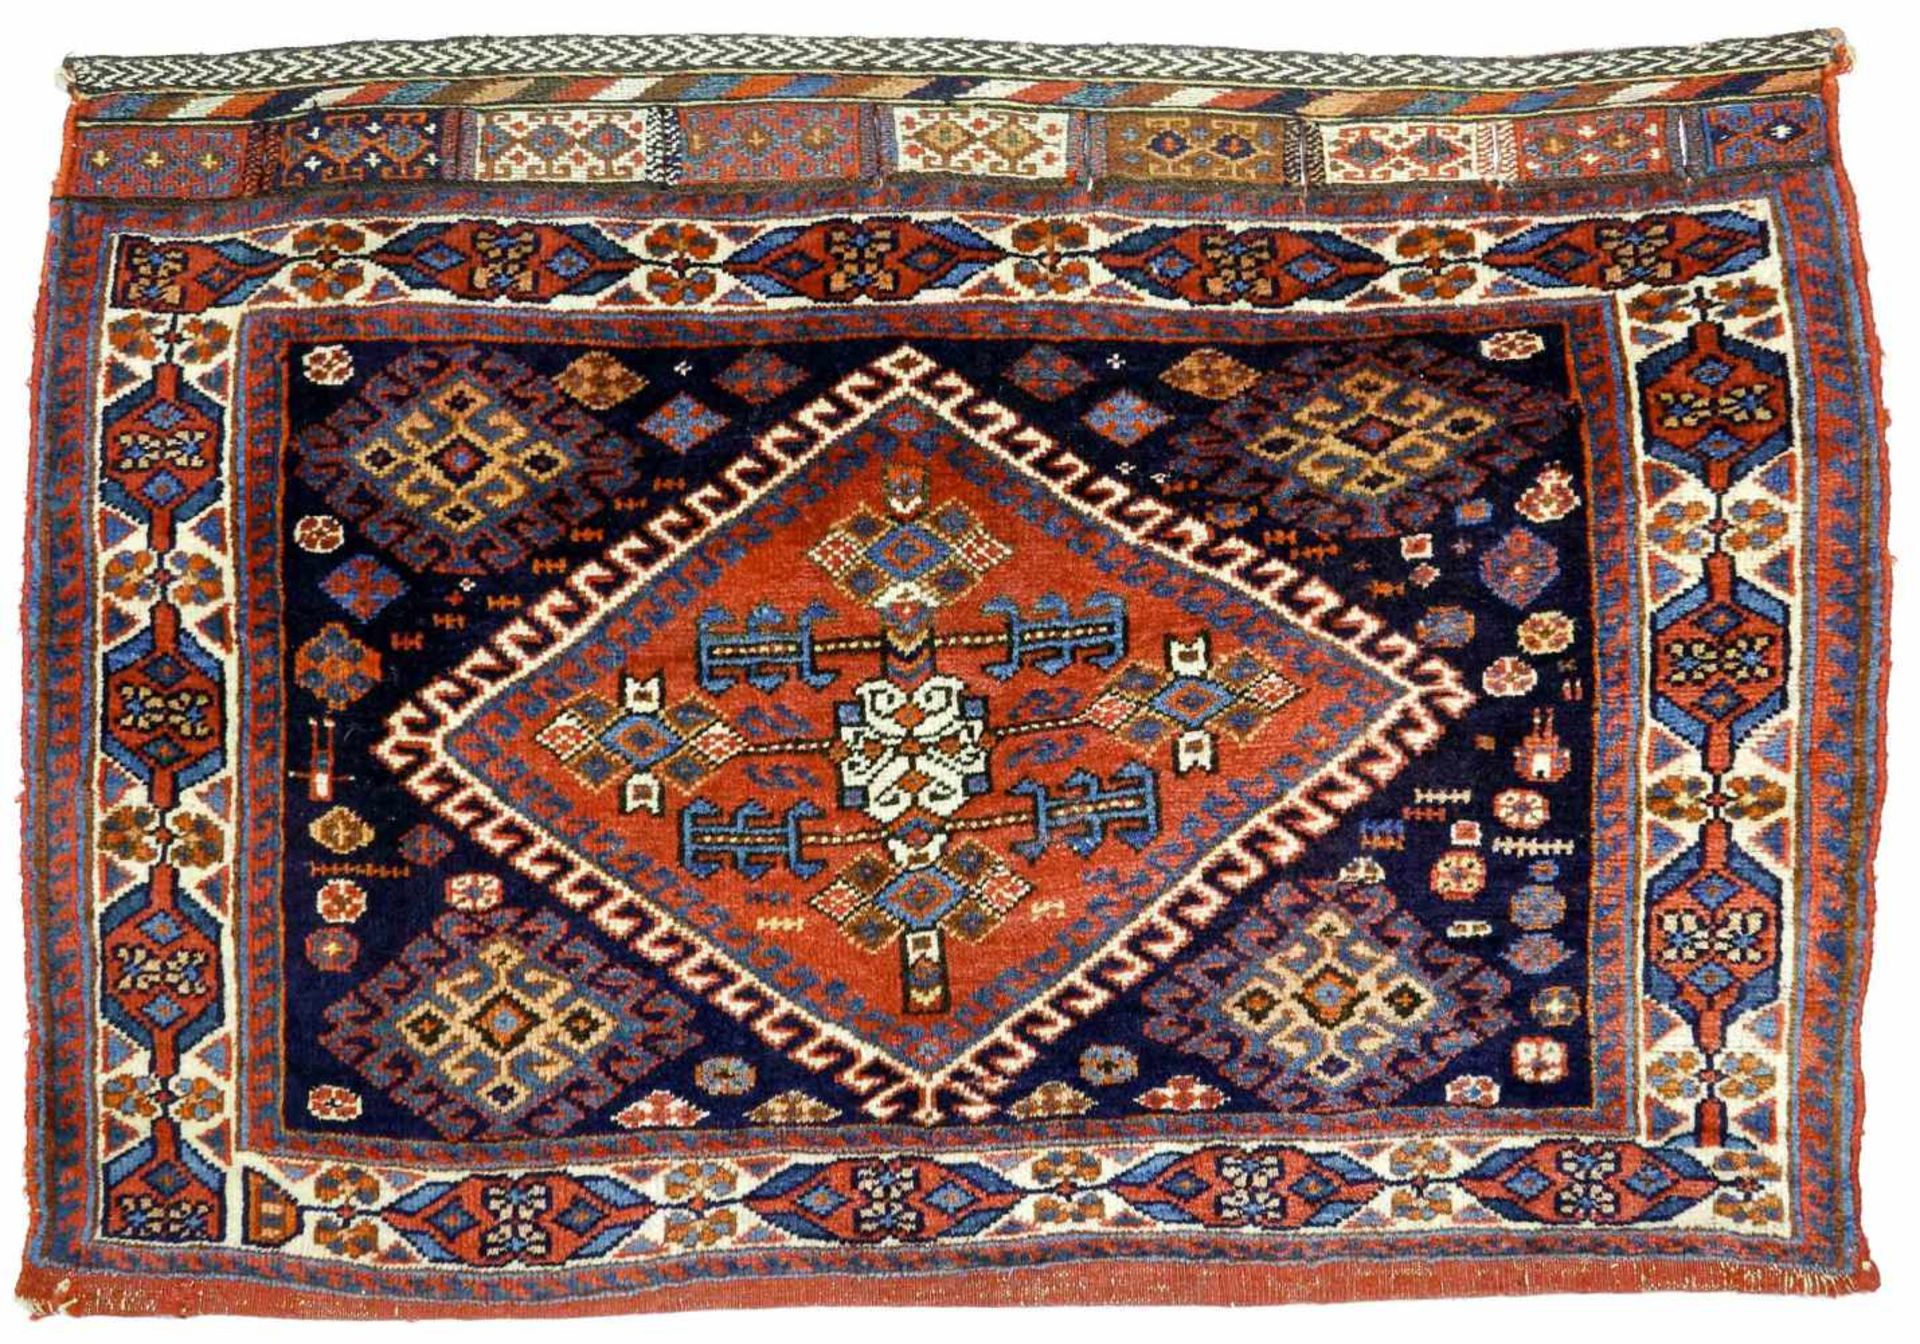 Teppich, Taschenfront, Belutsch, antikWolle auf Wolle. Zackenverzierte Bordüren umranden das